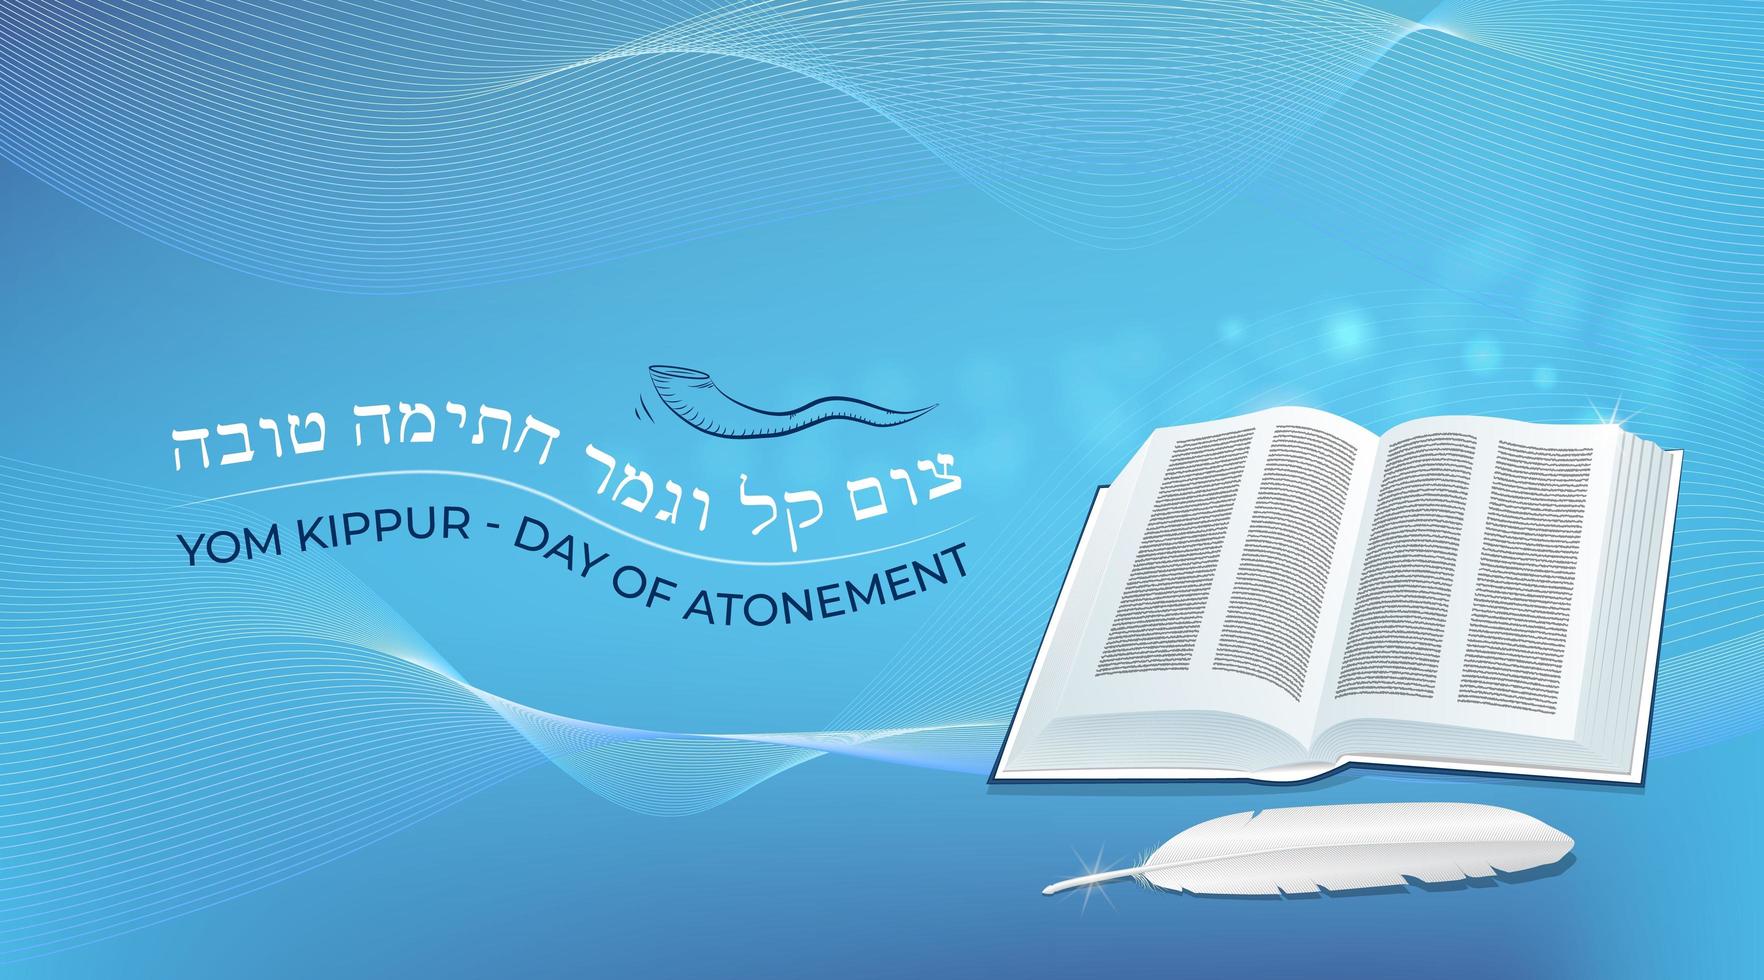 libro e padre. festa ebraica yom kippur con una frase tradizionale. vettore